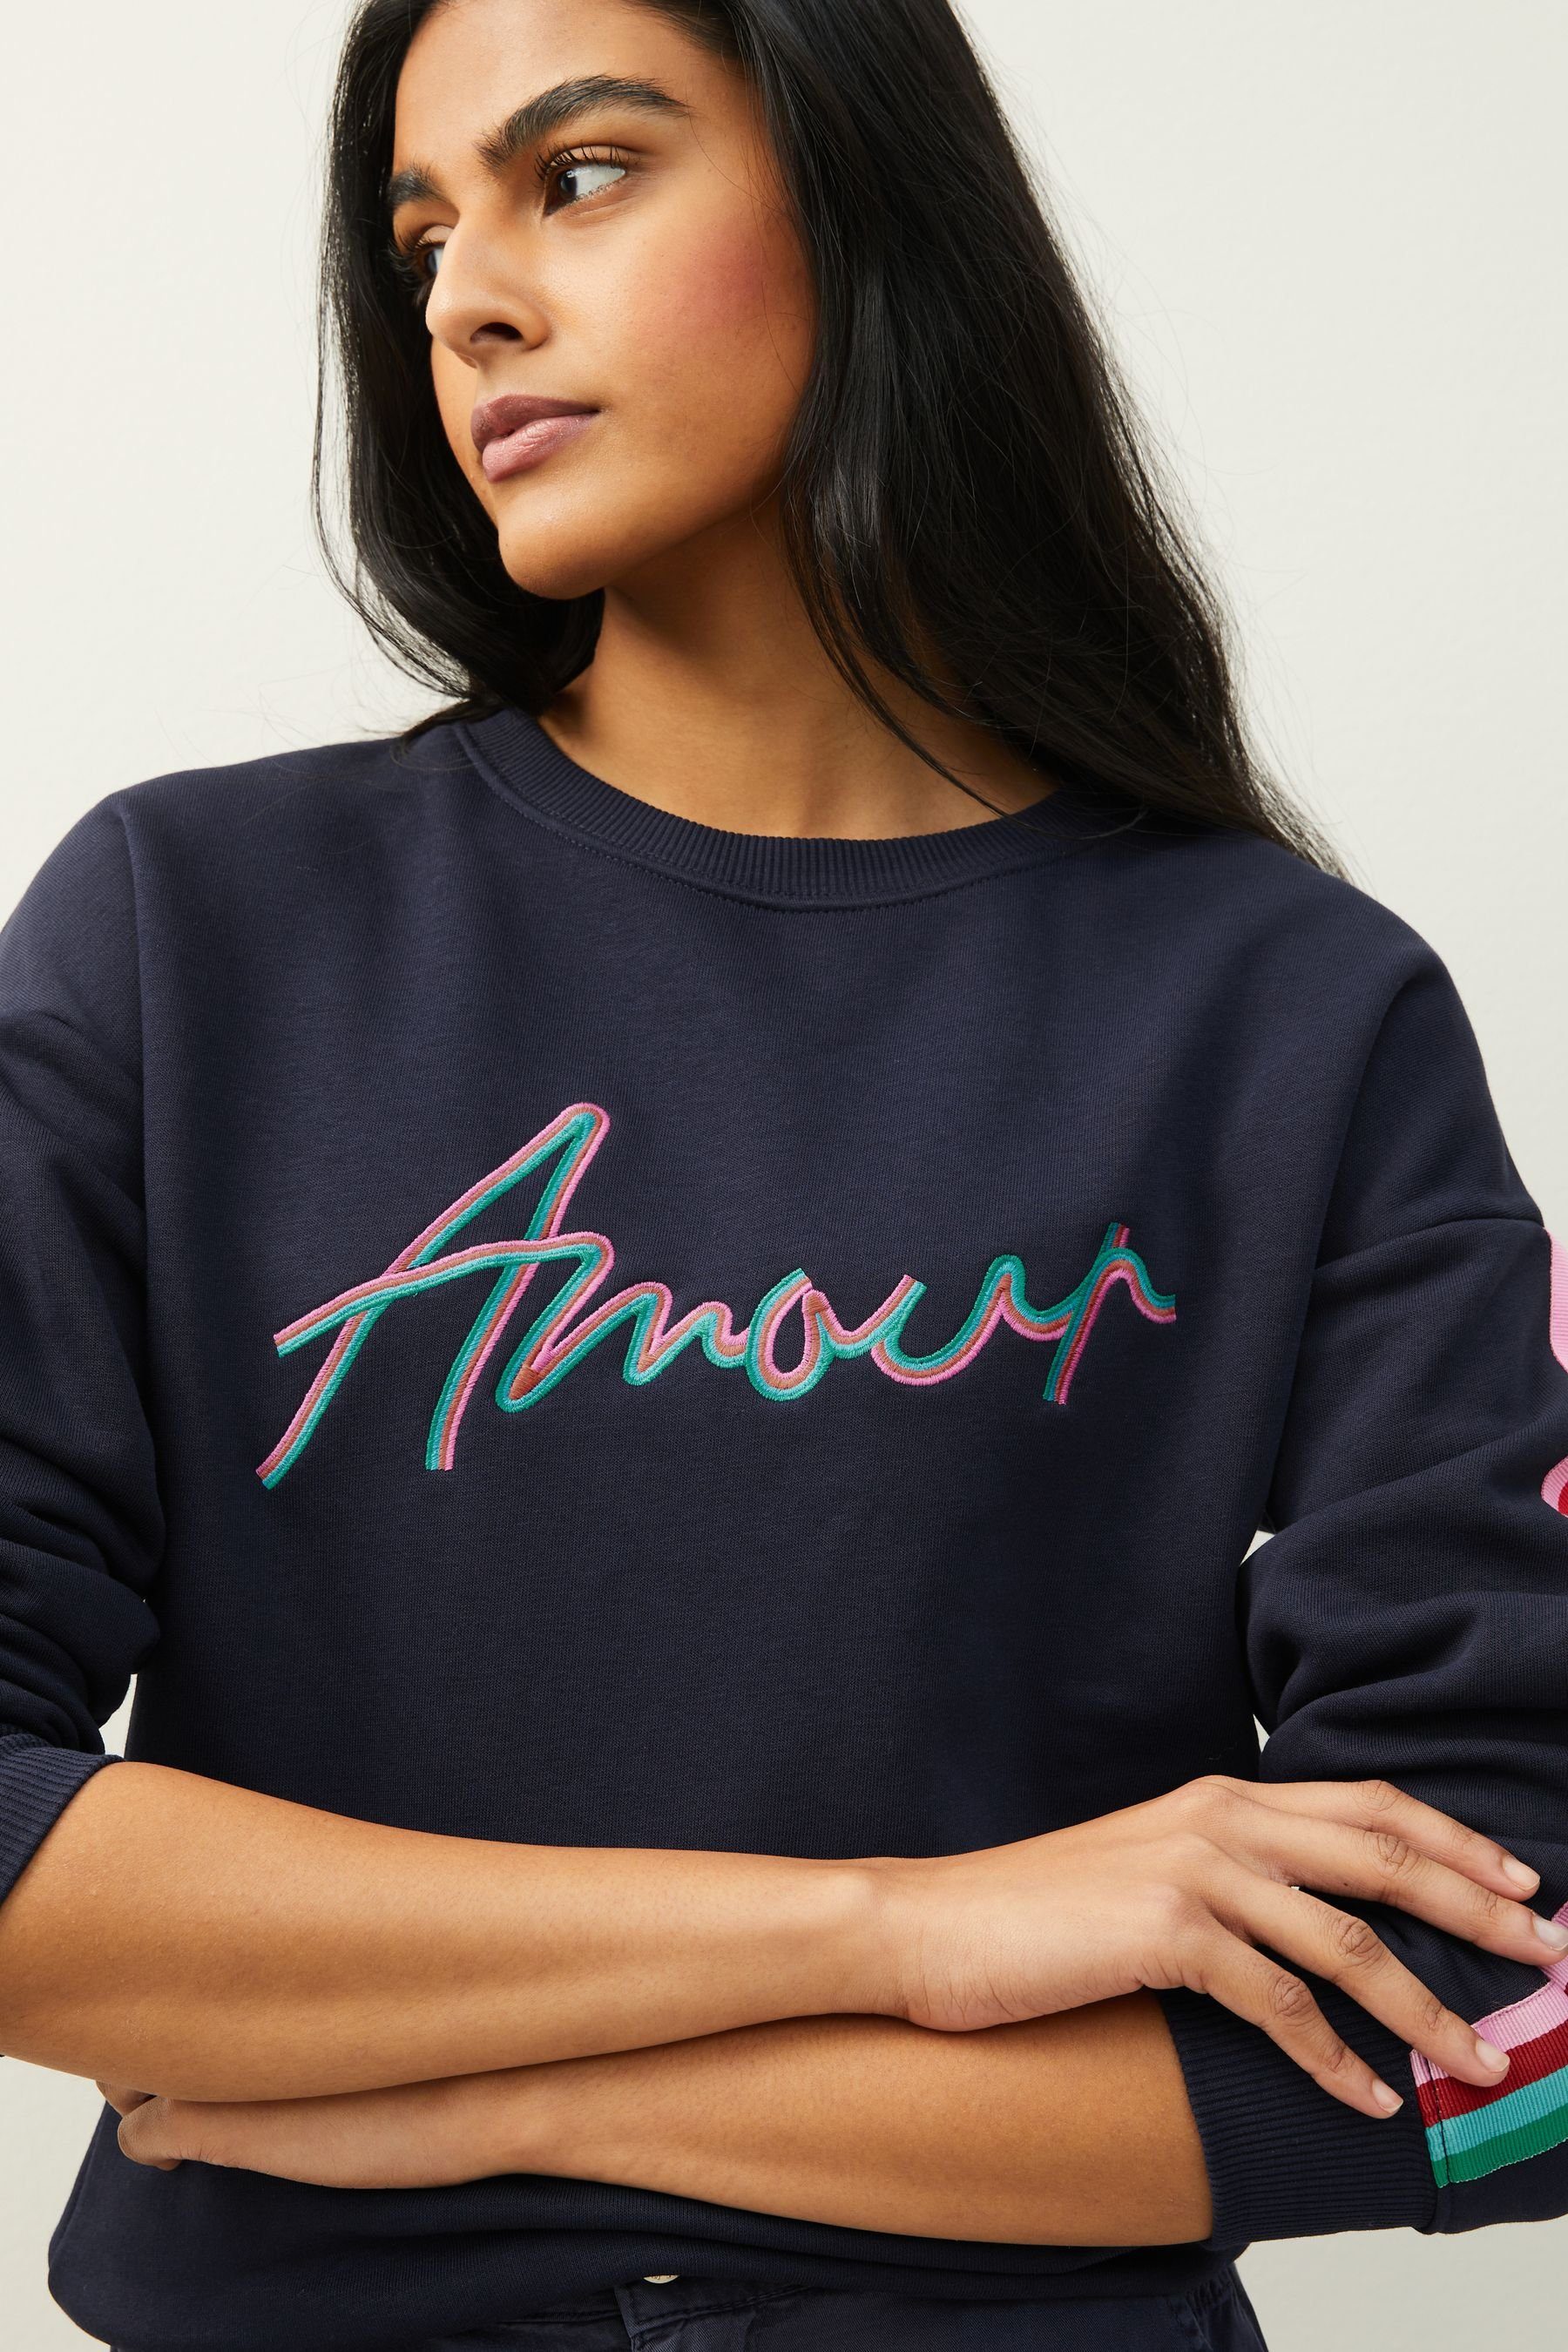 bunten Sweatshirt Farben in Sweatshirt (1-tlg) Next Amour